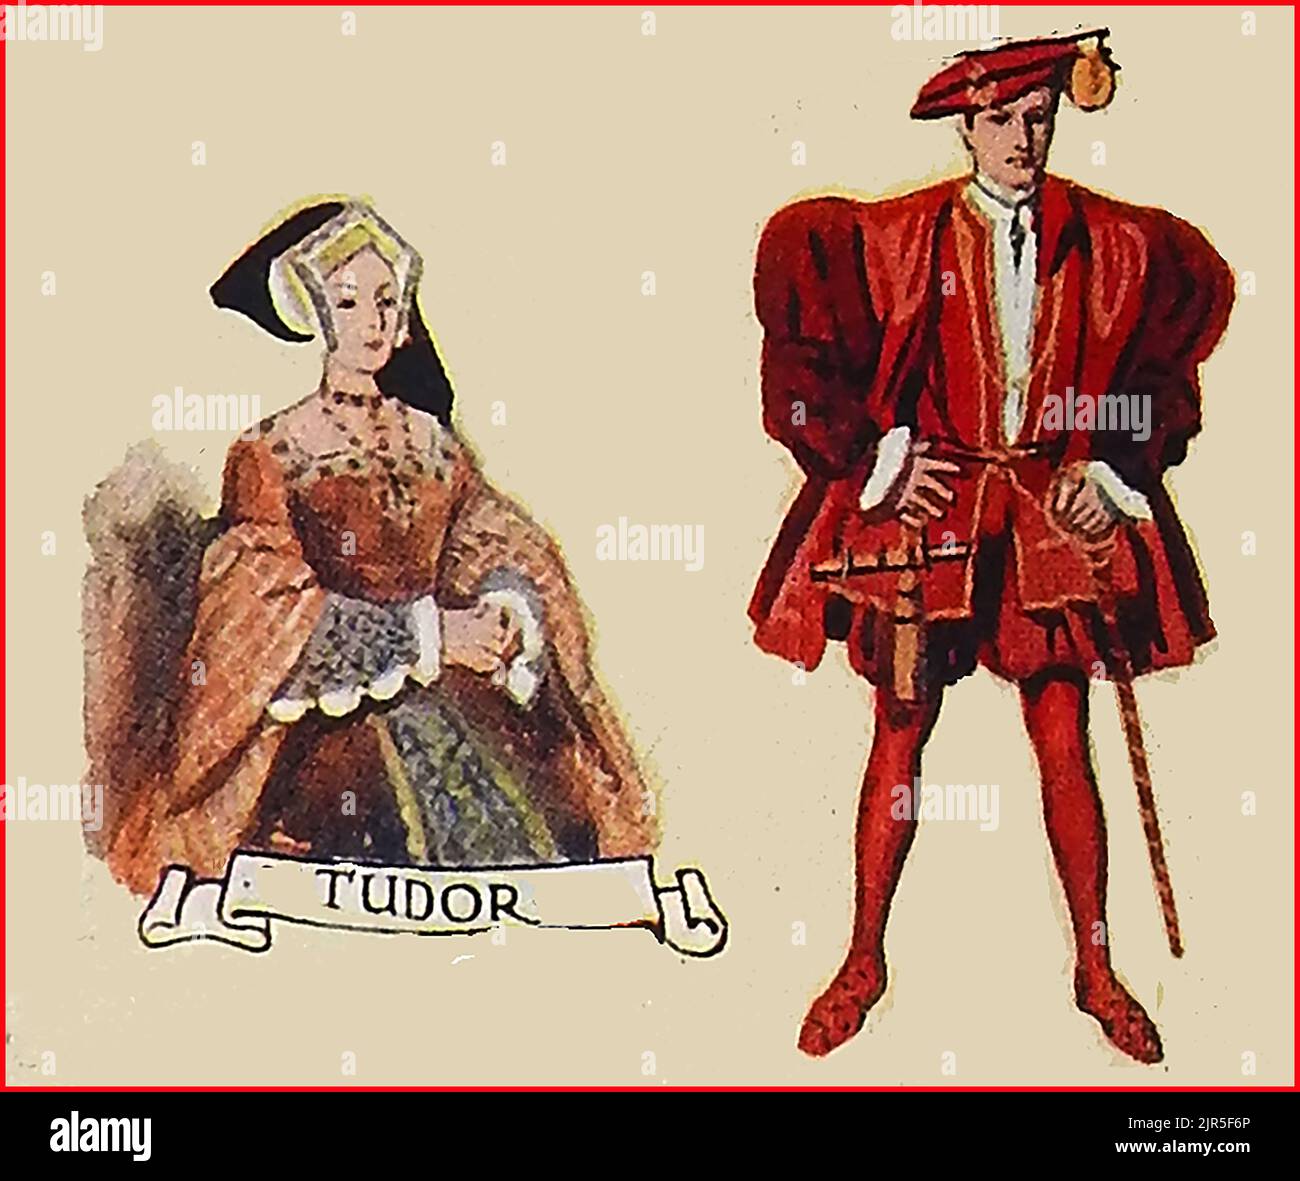 MODA IN GRAN BRETAGNA - una vecchia immagine colorata che mostra abiti tipici in tempi Tudor. Foto Stock